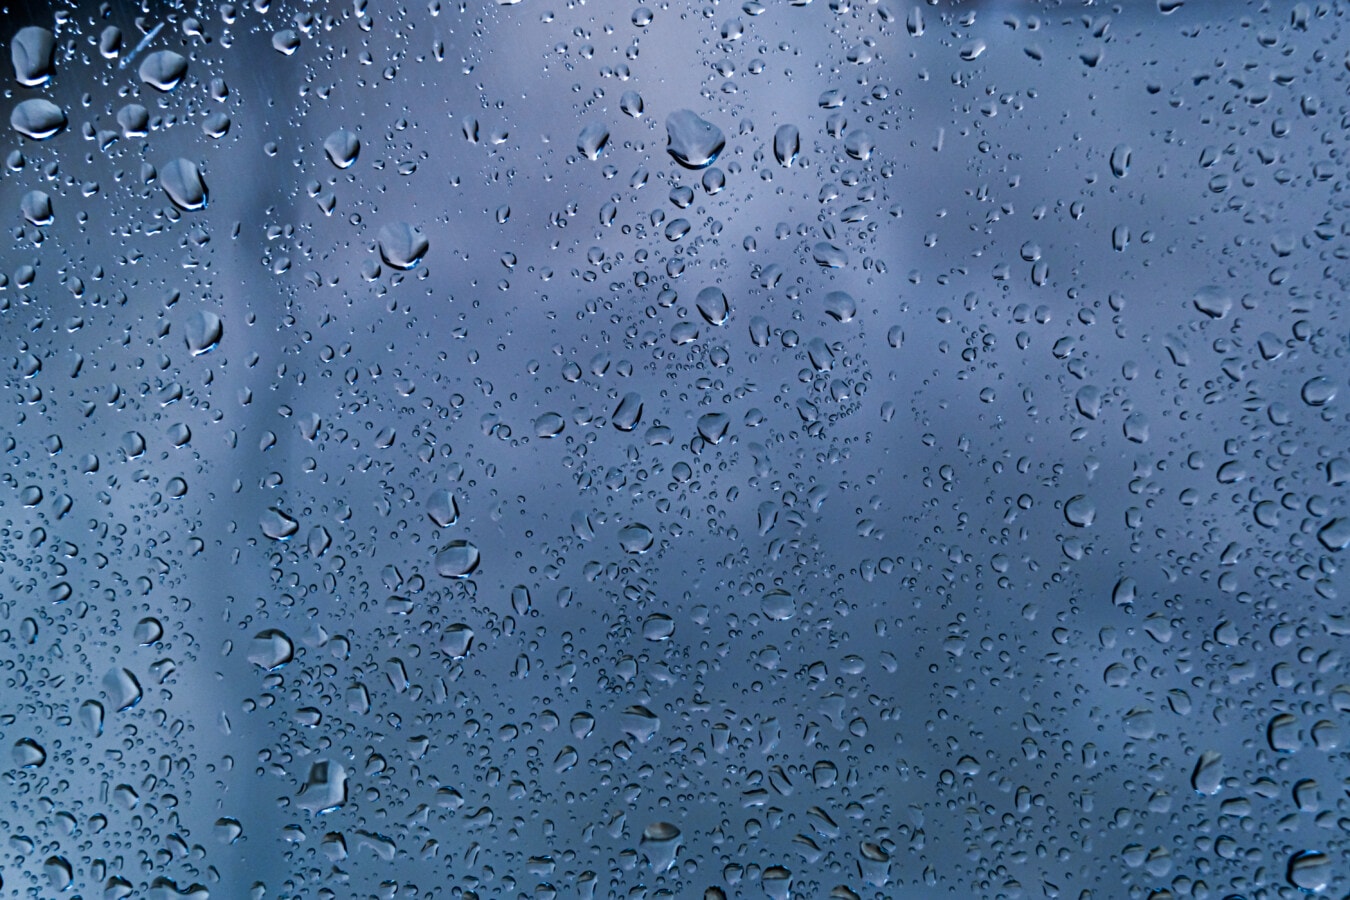 tekstury, deszcz, szkło, kondensacji, kropla deszczu, kropelki, wilgoć, przezroczysty, ciecz, mokra